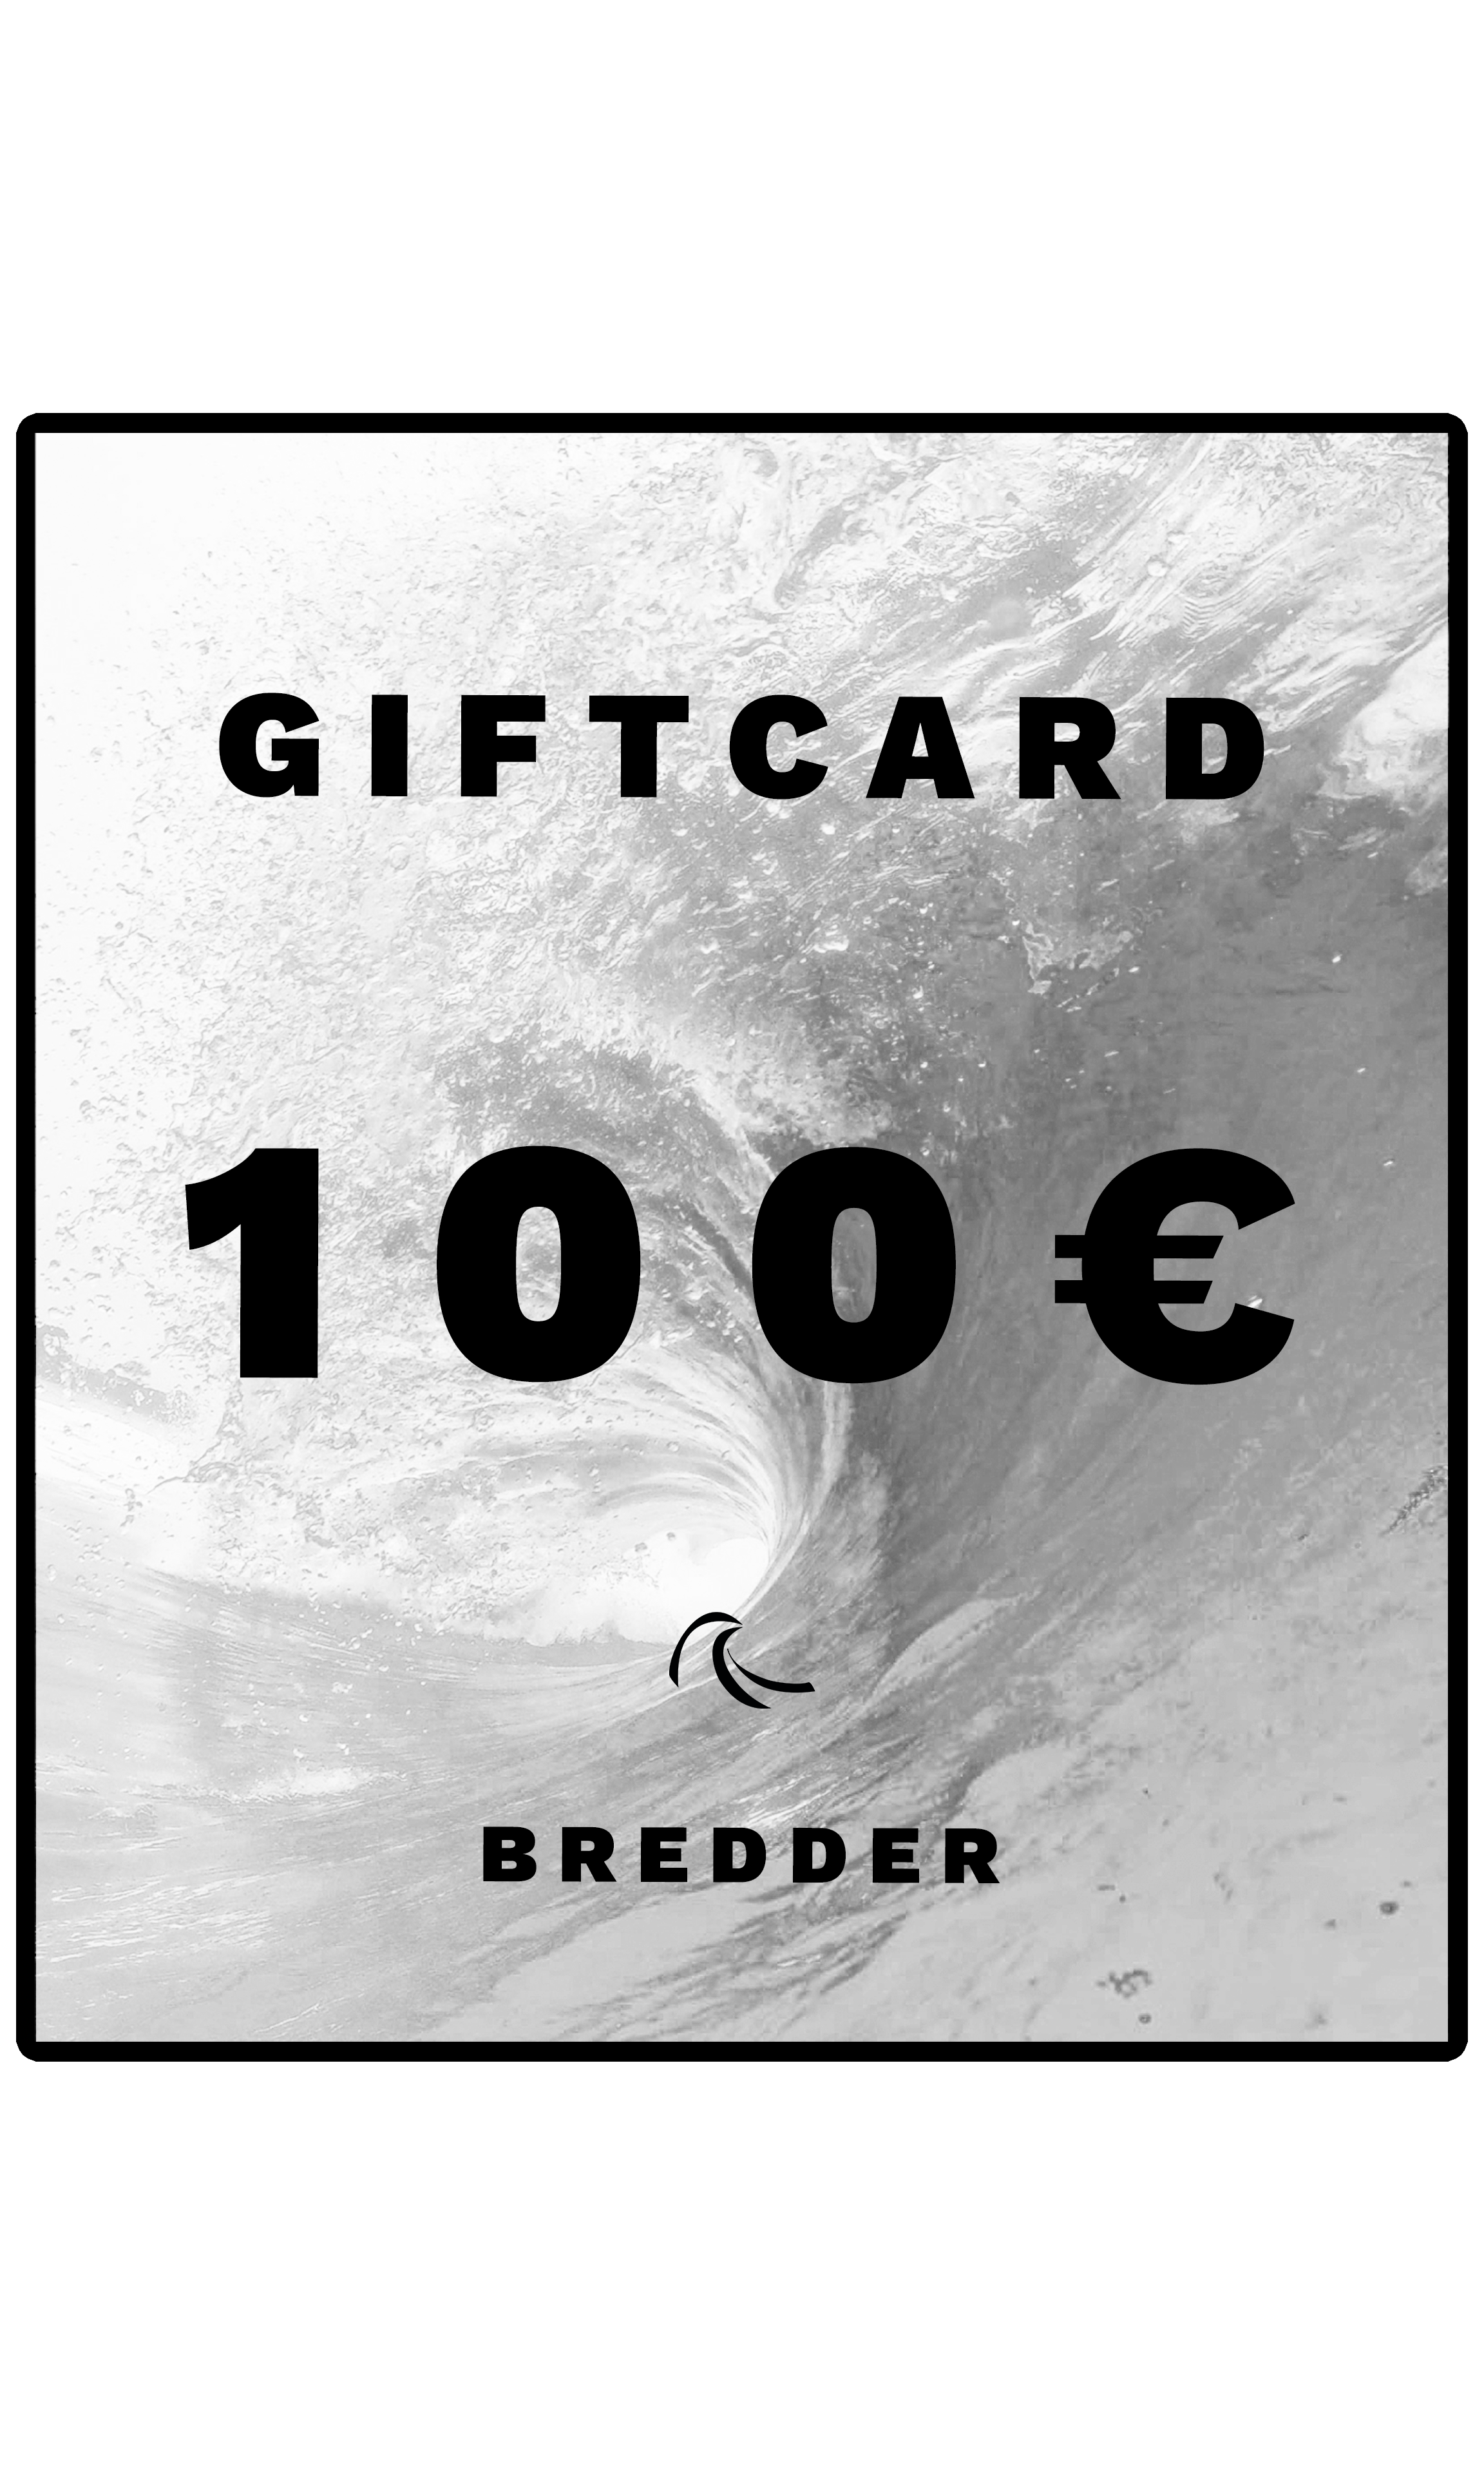 100 € Bredder Shop gift voucher